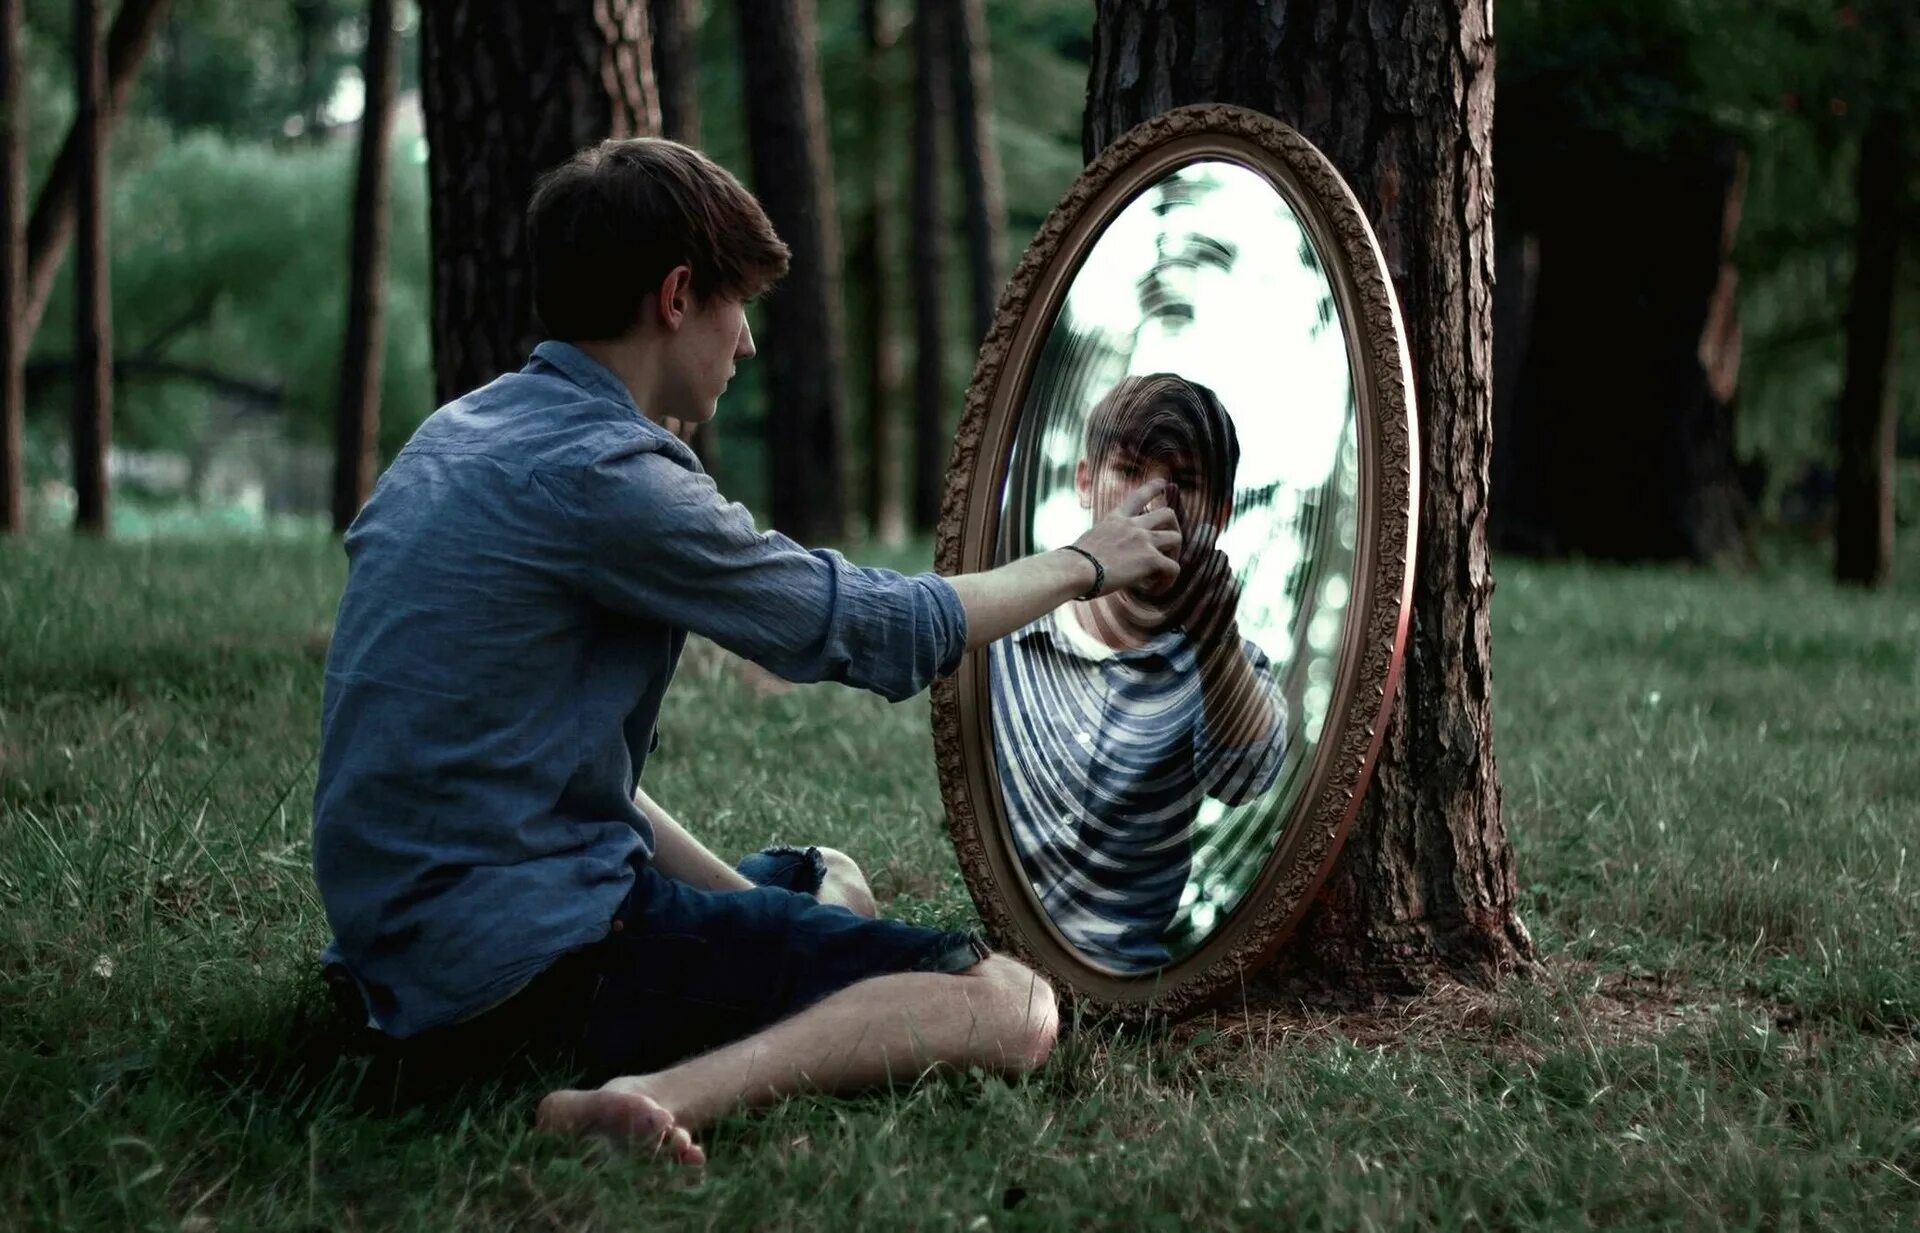 Отражение в зеркале. Человек в зеркале. Фотосет с зеркалом. Отражение человека в зеркале. Другая сторона реальности